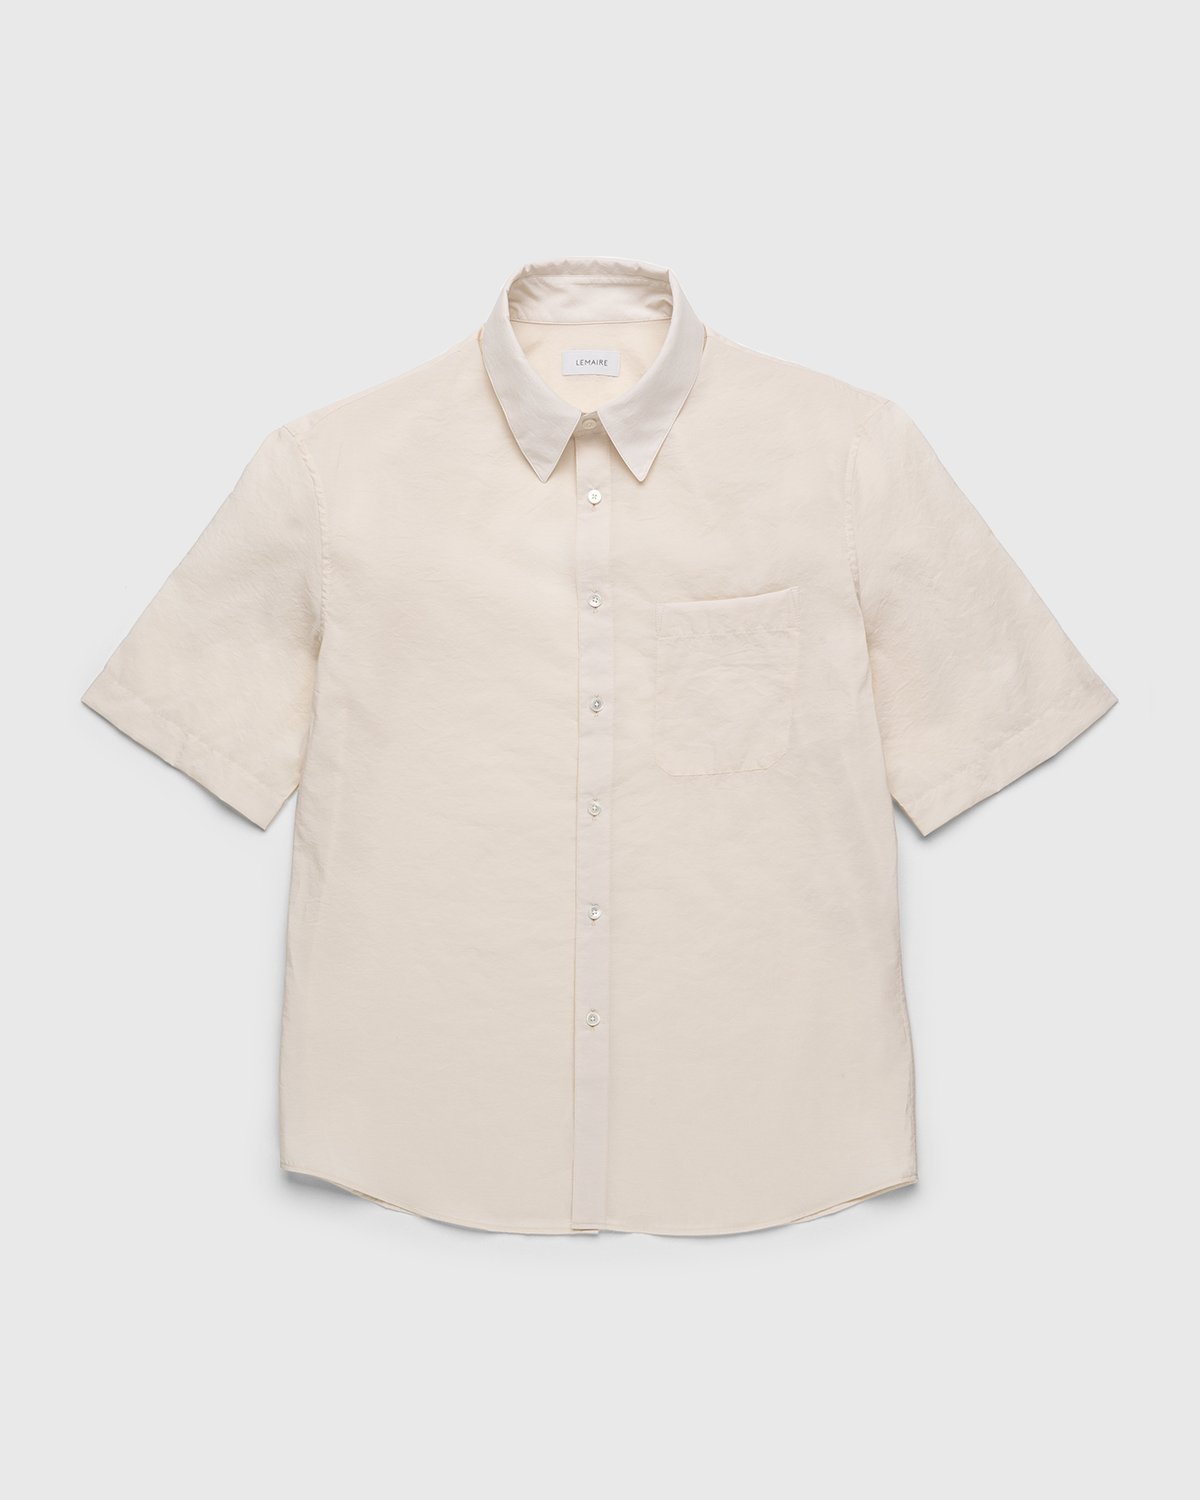 Lemaire - Regular Collar Short Sleeve Shirt Ivory - Clothing - White - Image 1